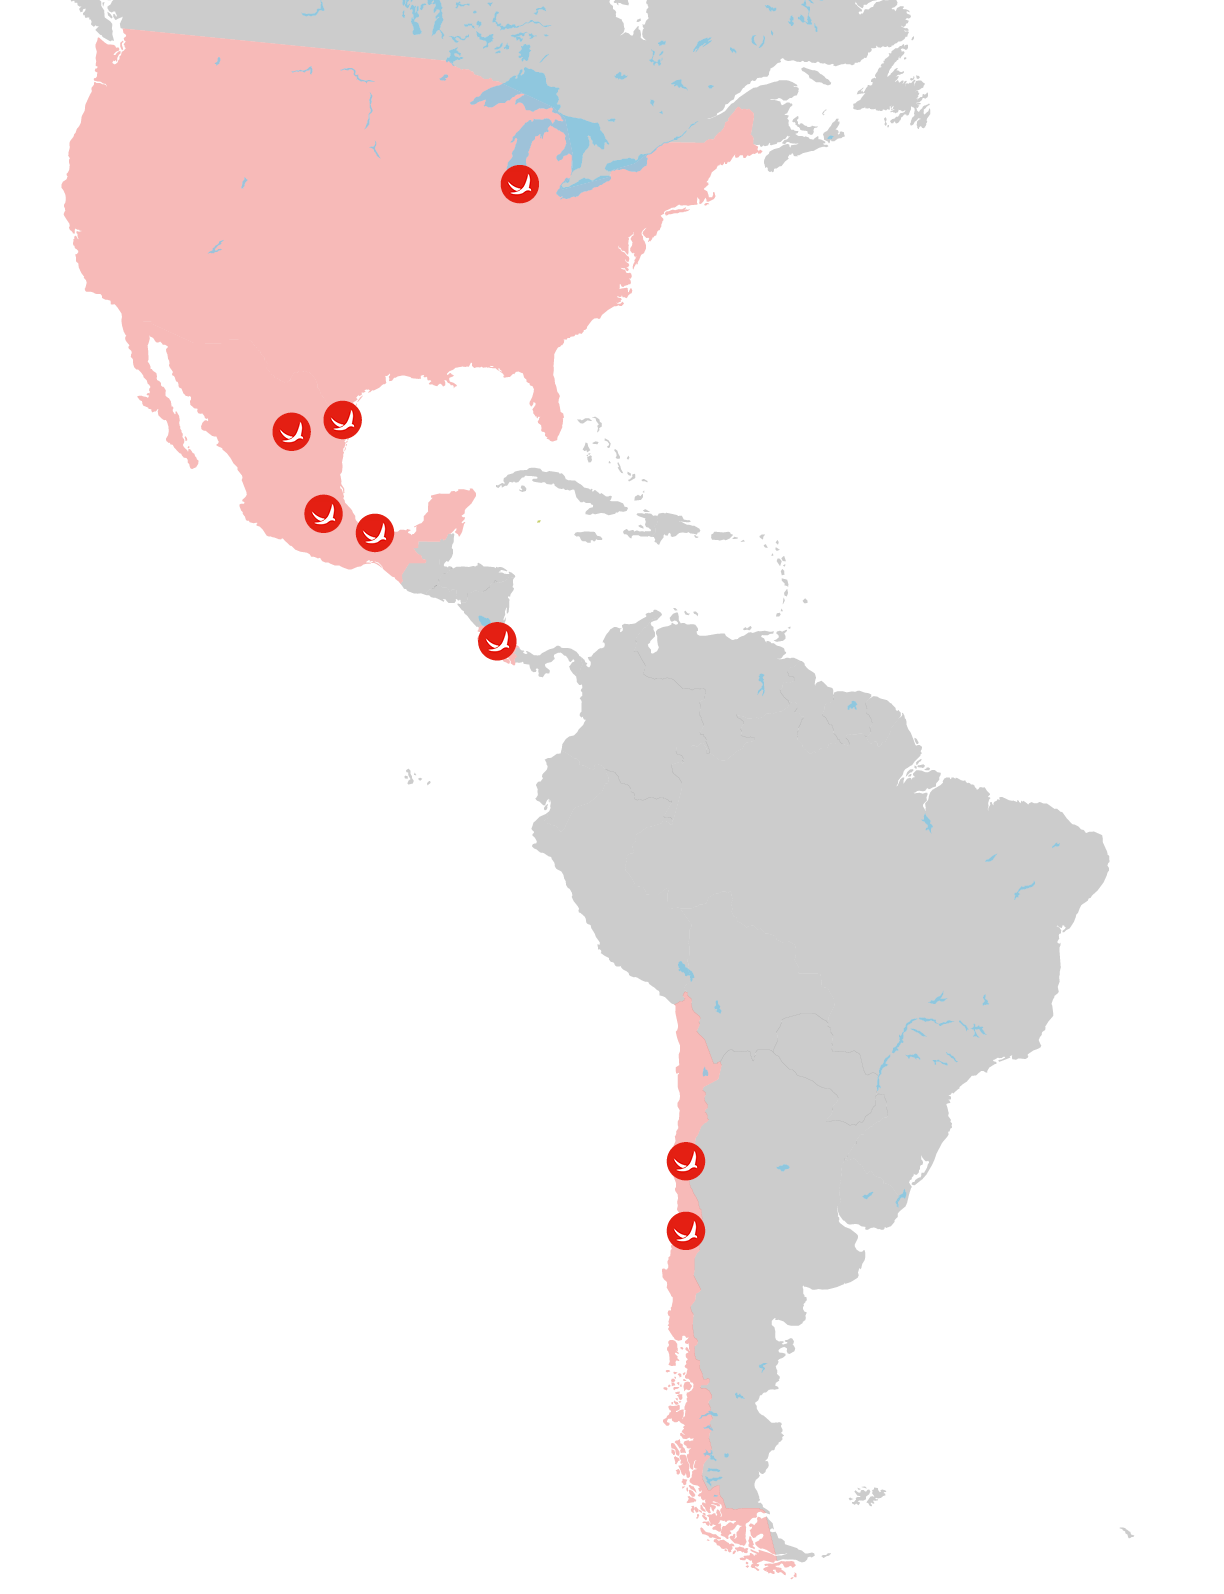 Mapa de América con sedes de Vicarli